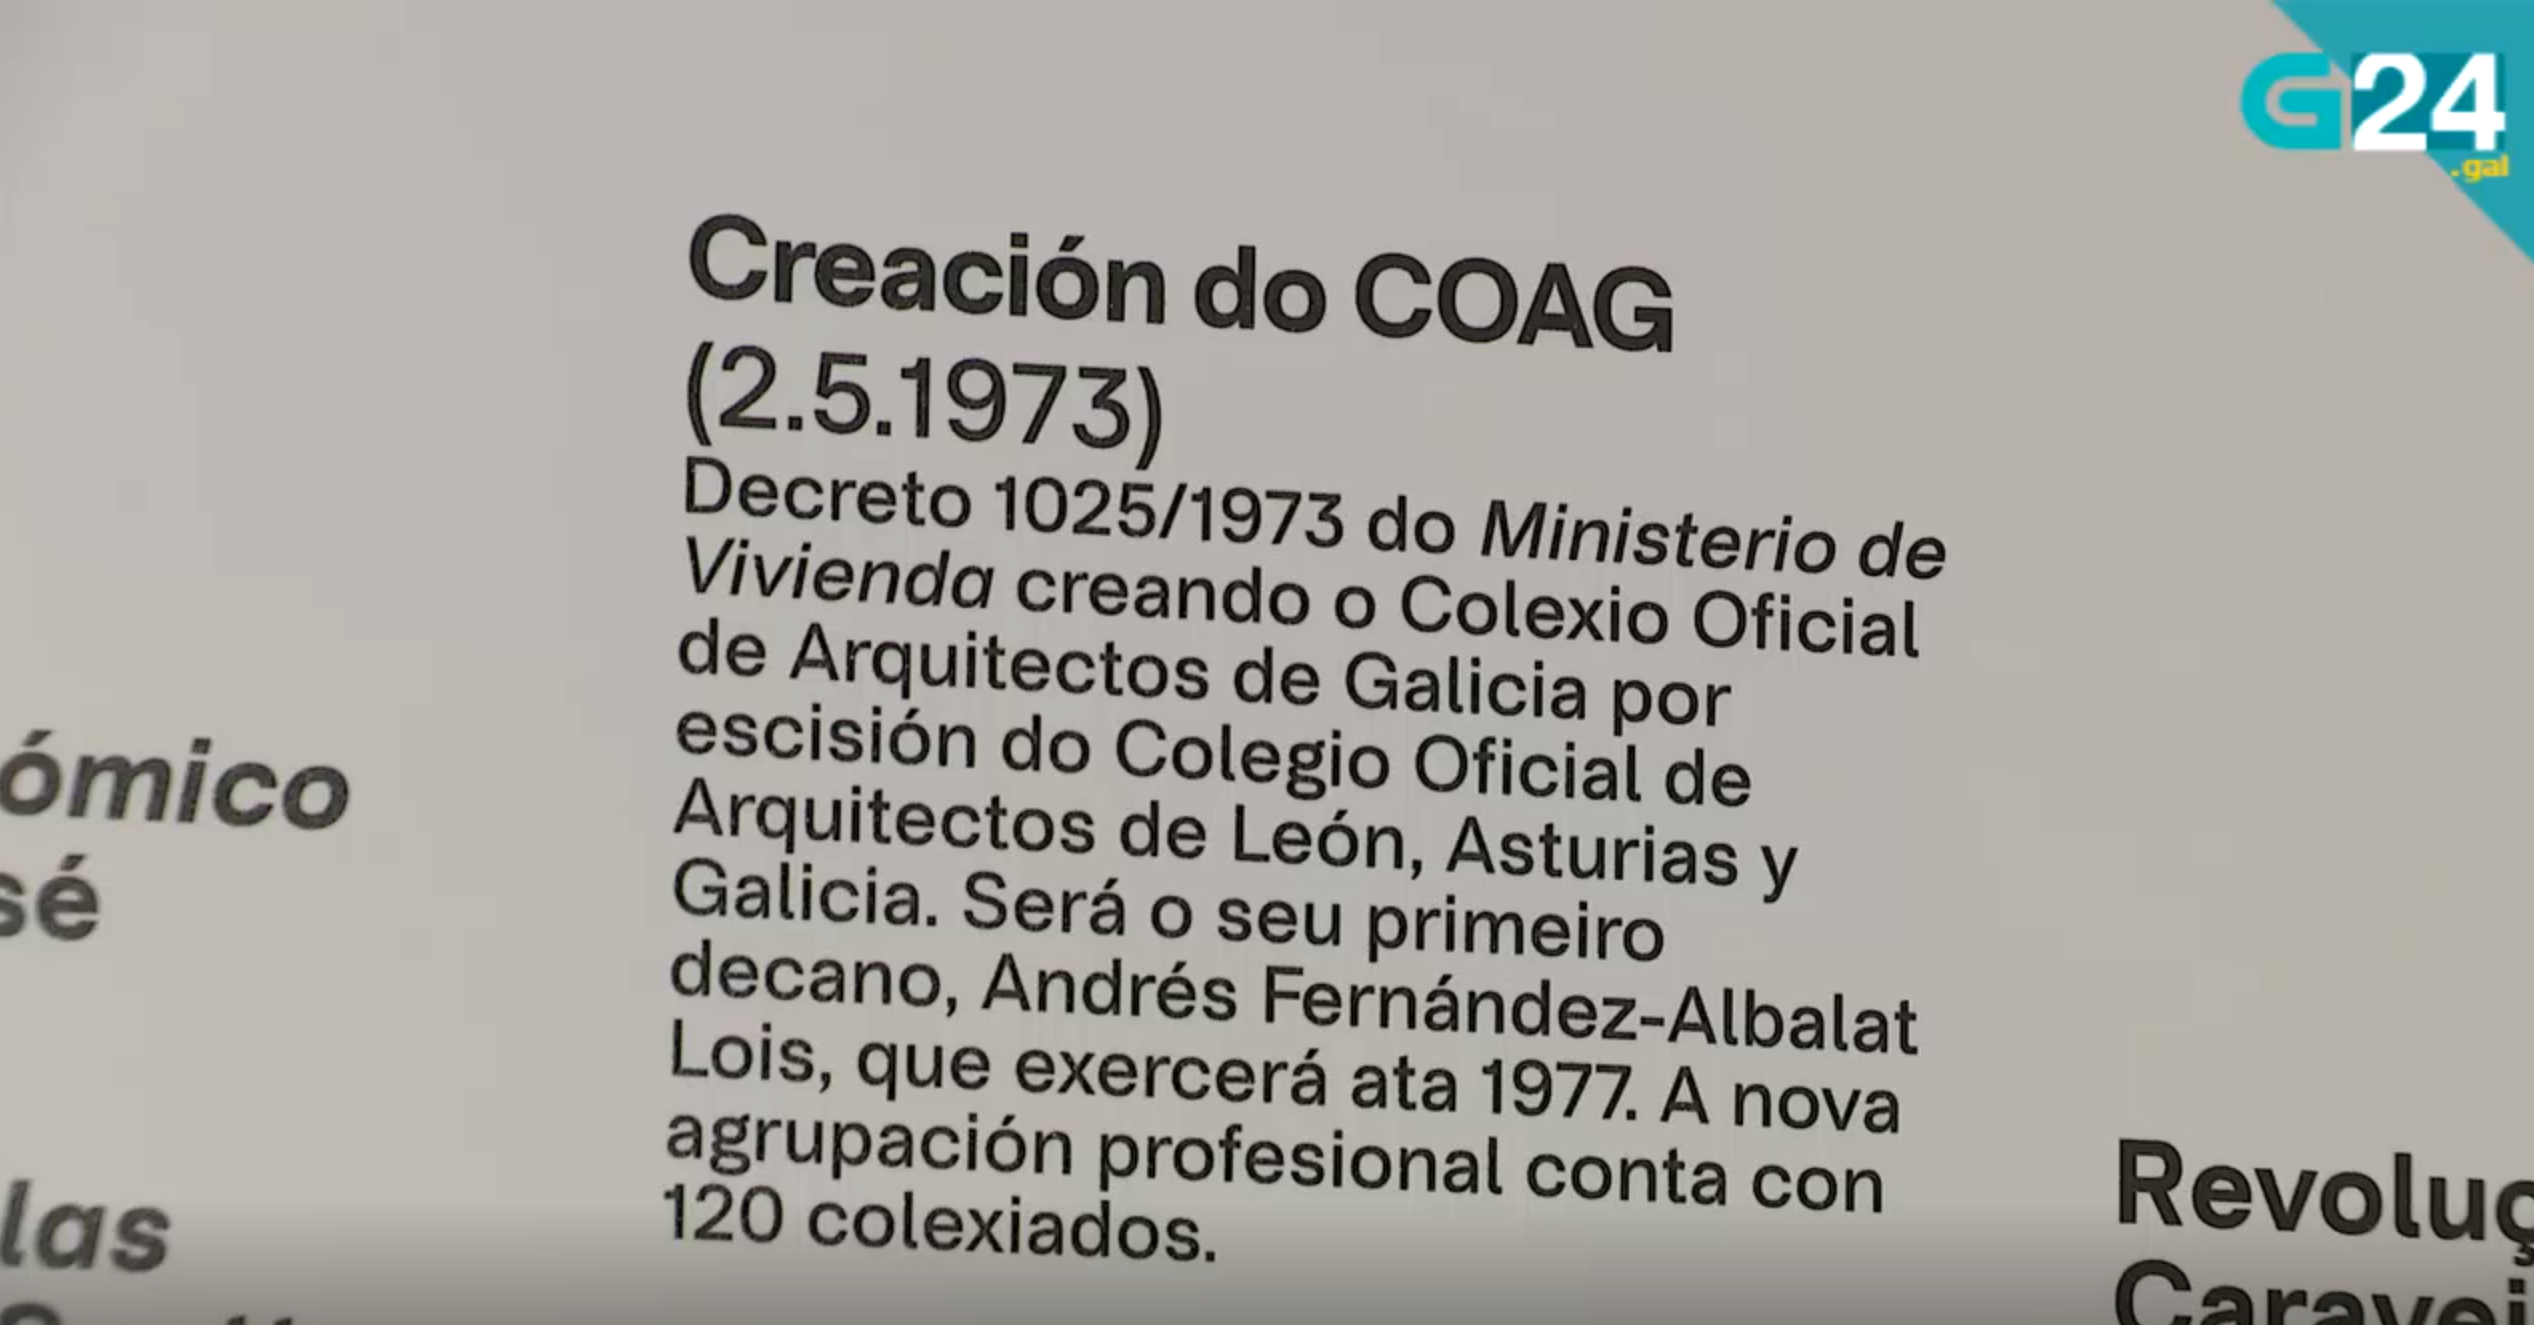 Reportaxe na TVG sobre os 50 anos do Colexio Oficial de Arquitectos de Galicia